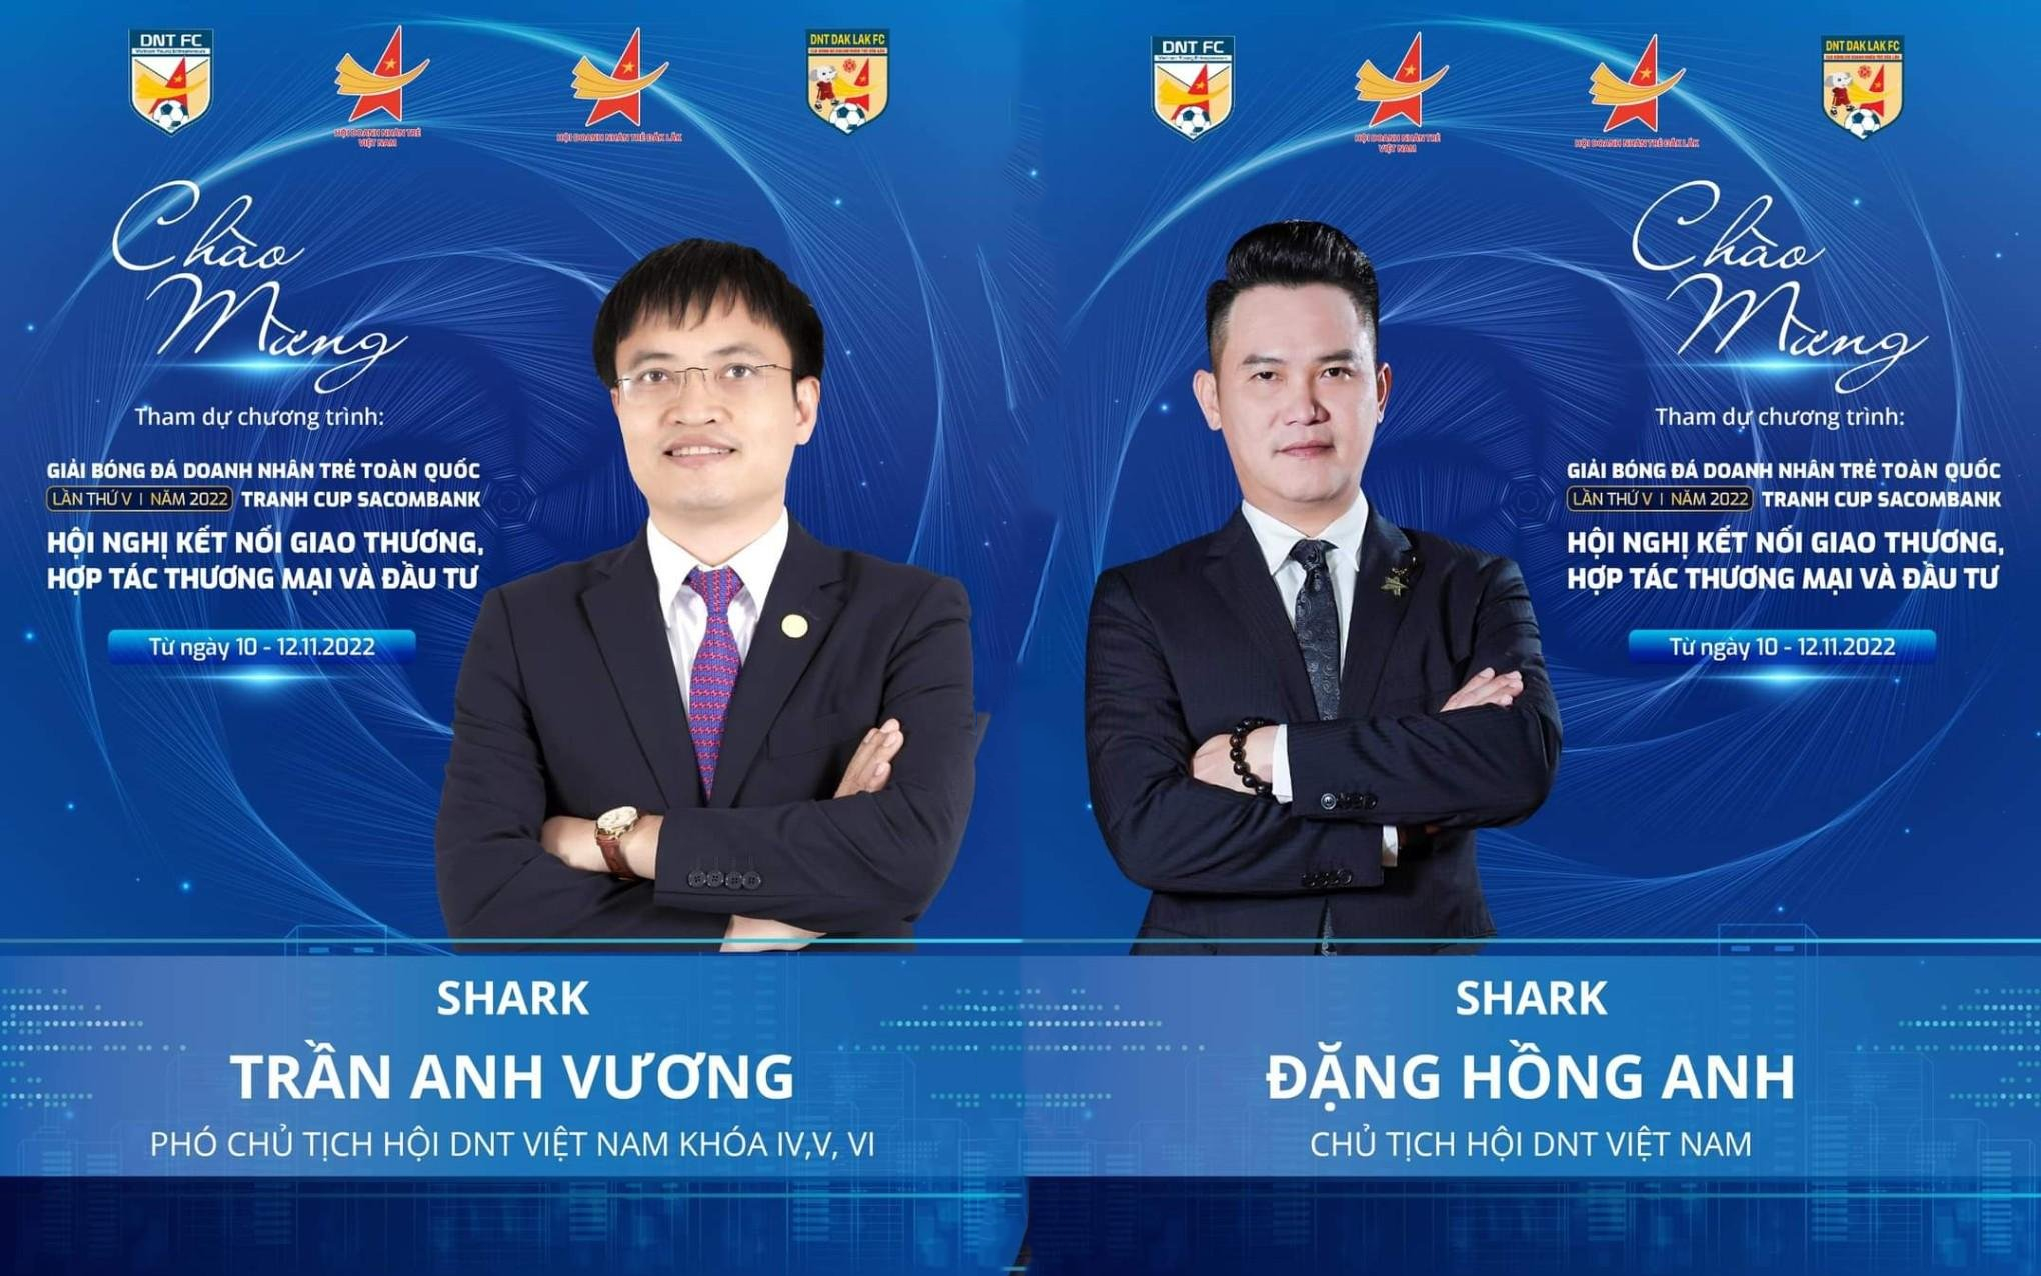 Hé lộ dàn Shark tham dự hội nghị kết nối giao thương, hợp tác thương mại & đầu tư 2022